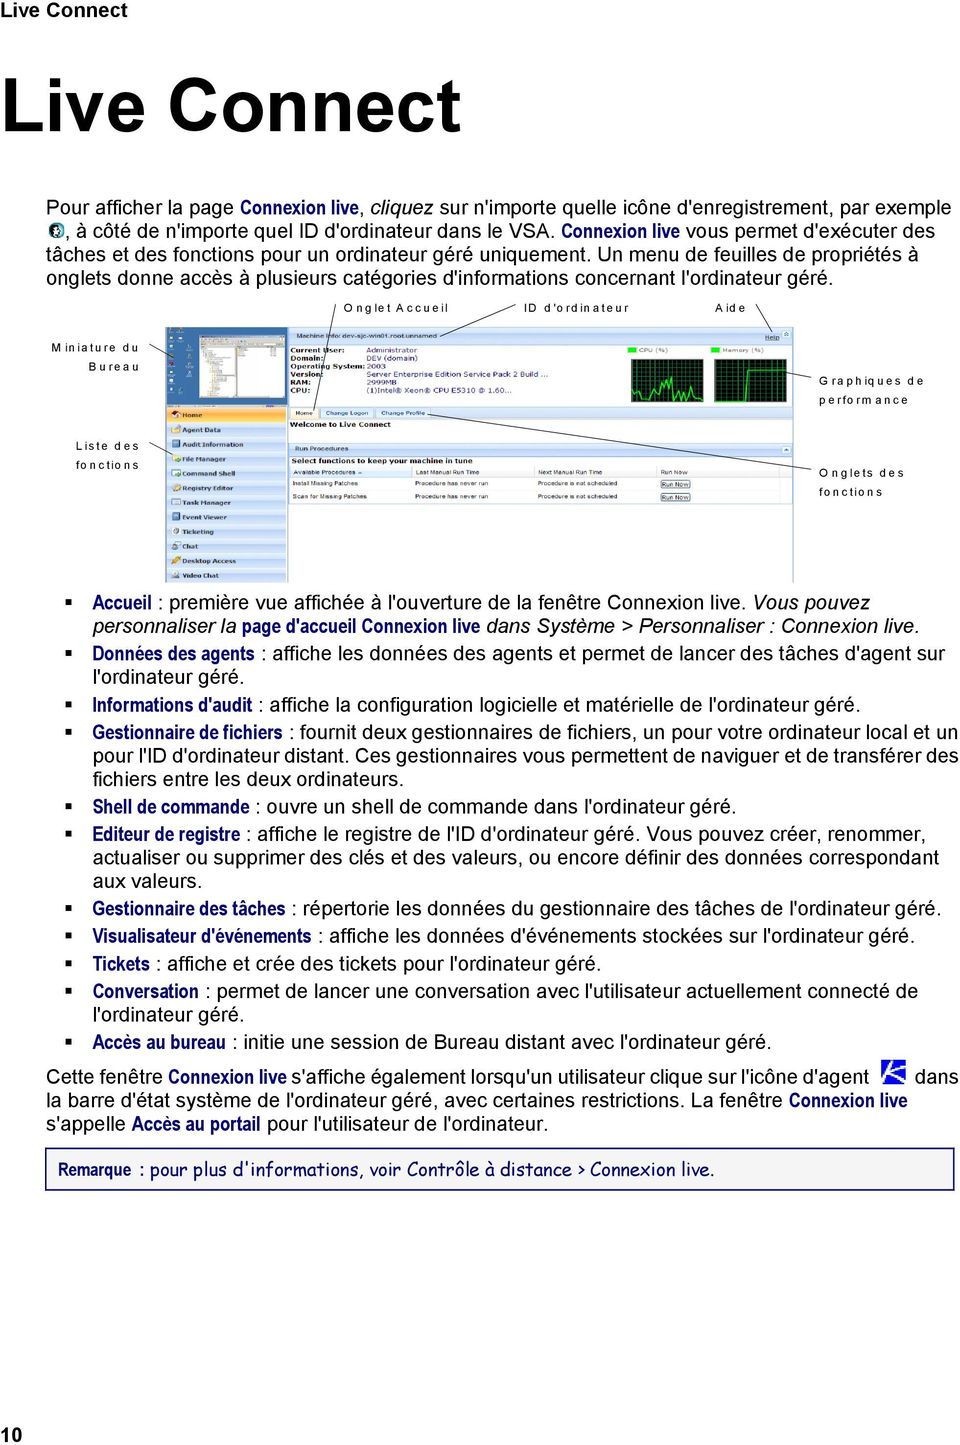 Un menu de feuilles de propriétés à onglets donne accès à plusieurs catégories d'informations concernant l'ordinateur géré.